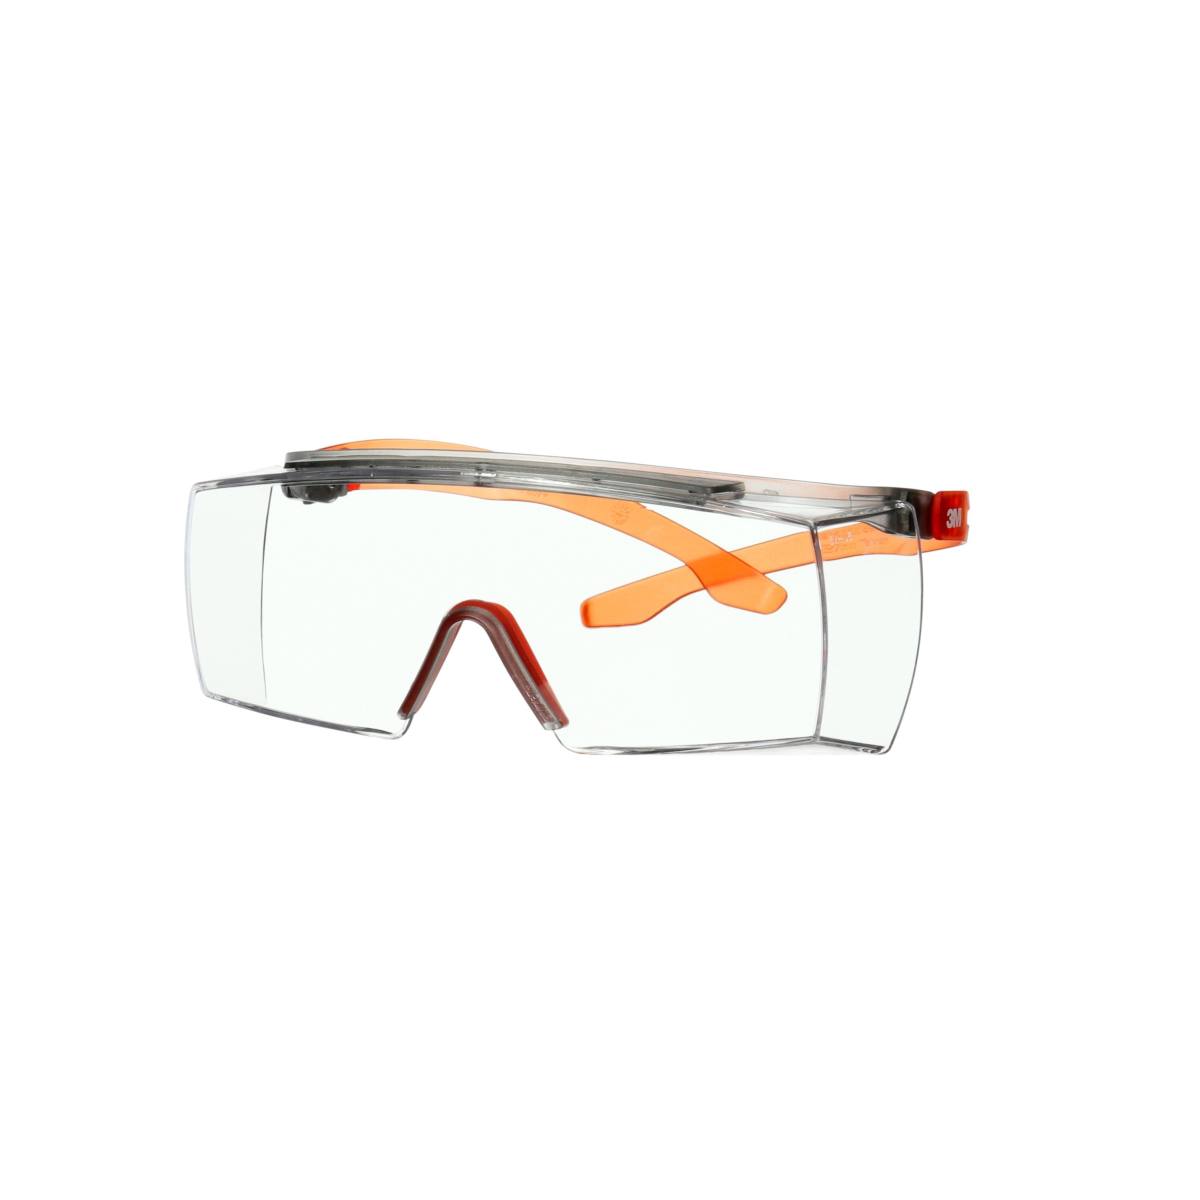 3M SecureFit 3700 sur-lunettes, branches orange, revêtement anti-buée Scotchgard (K&amp;N), écran transparent, angle réglable, SF3701SGAF-ORG-EU